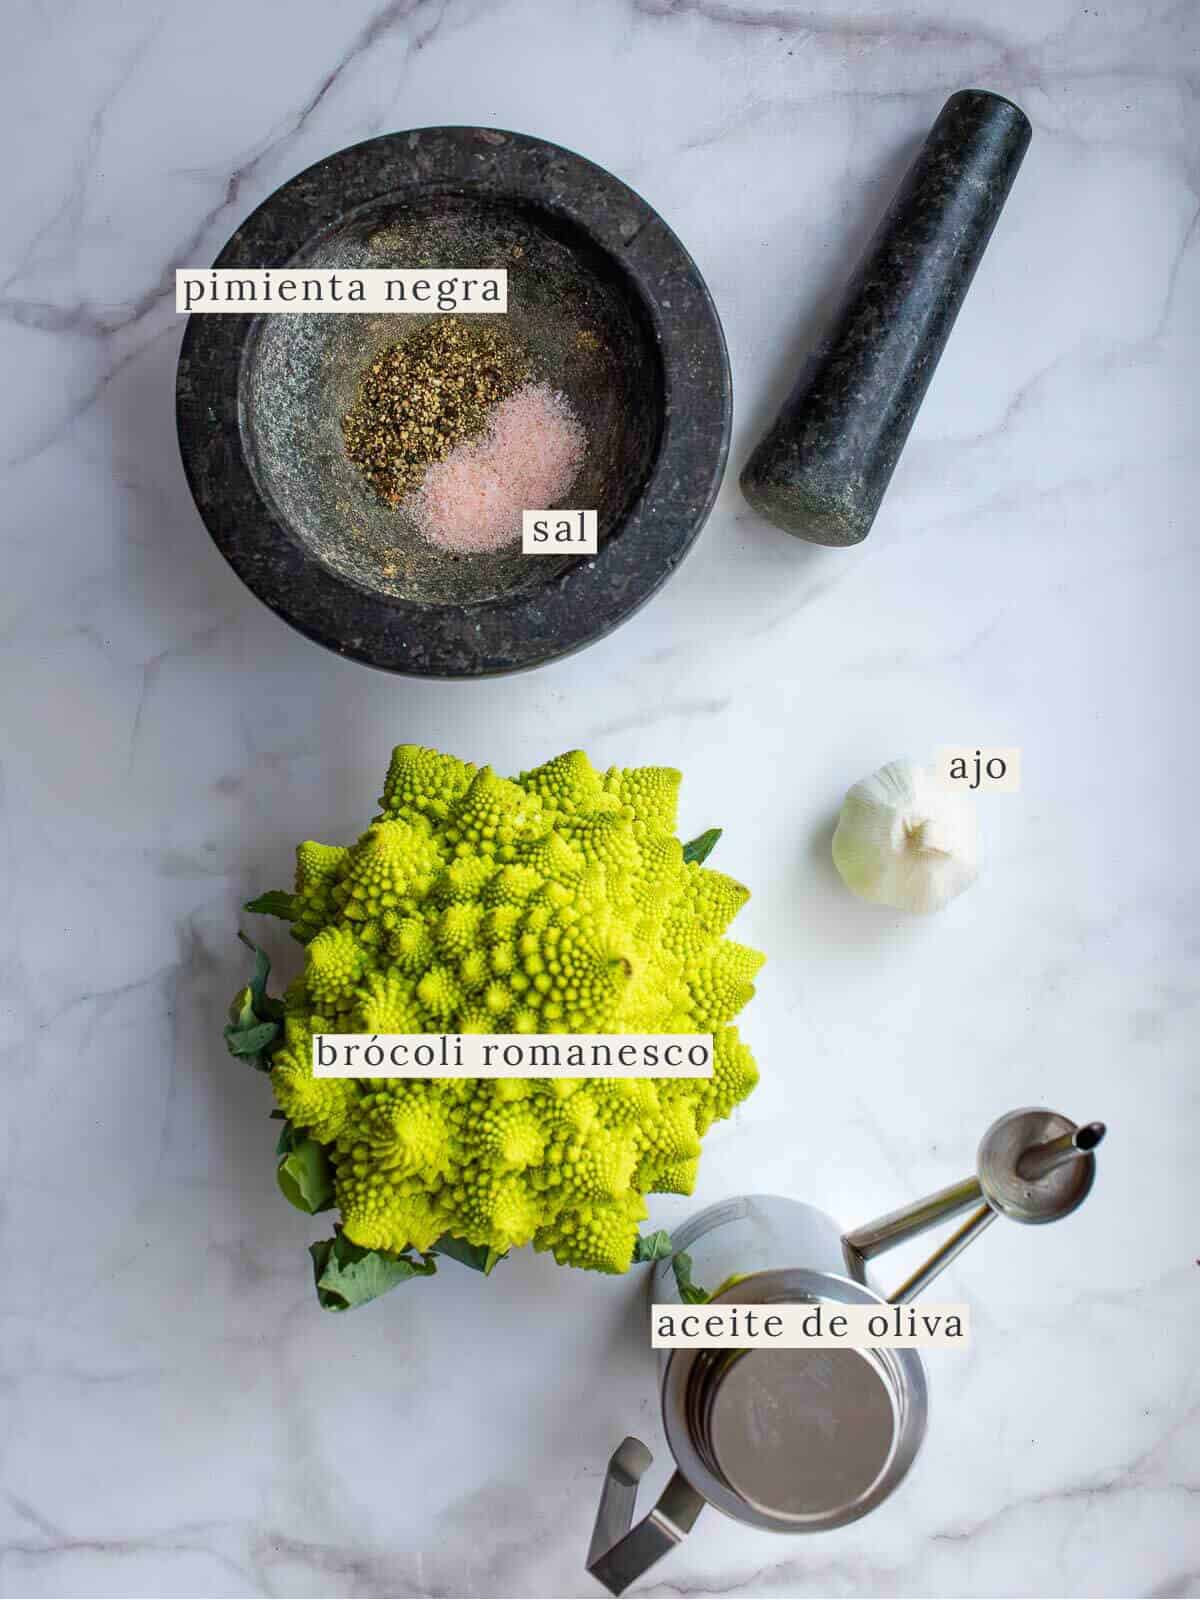 ingredientes para preparar la receta de brócoli romanesco.